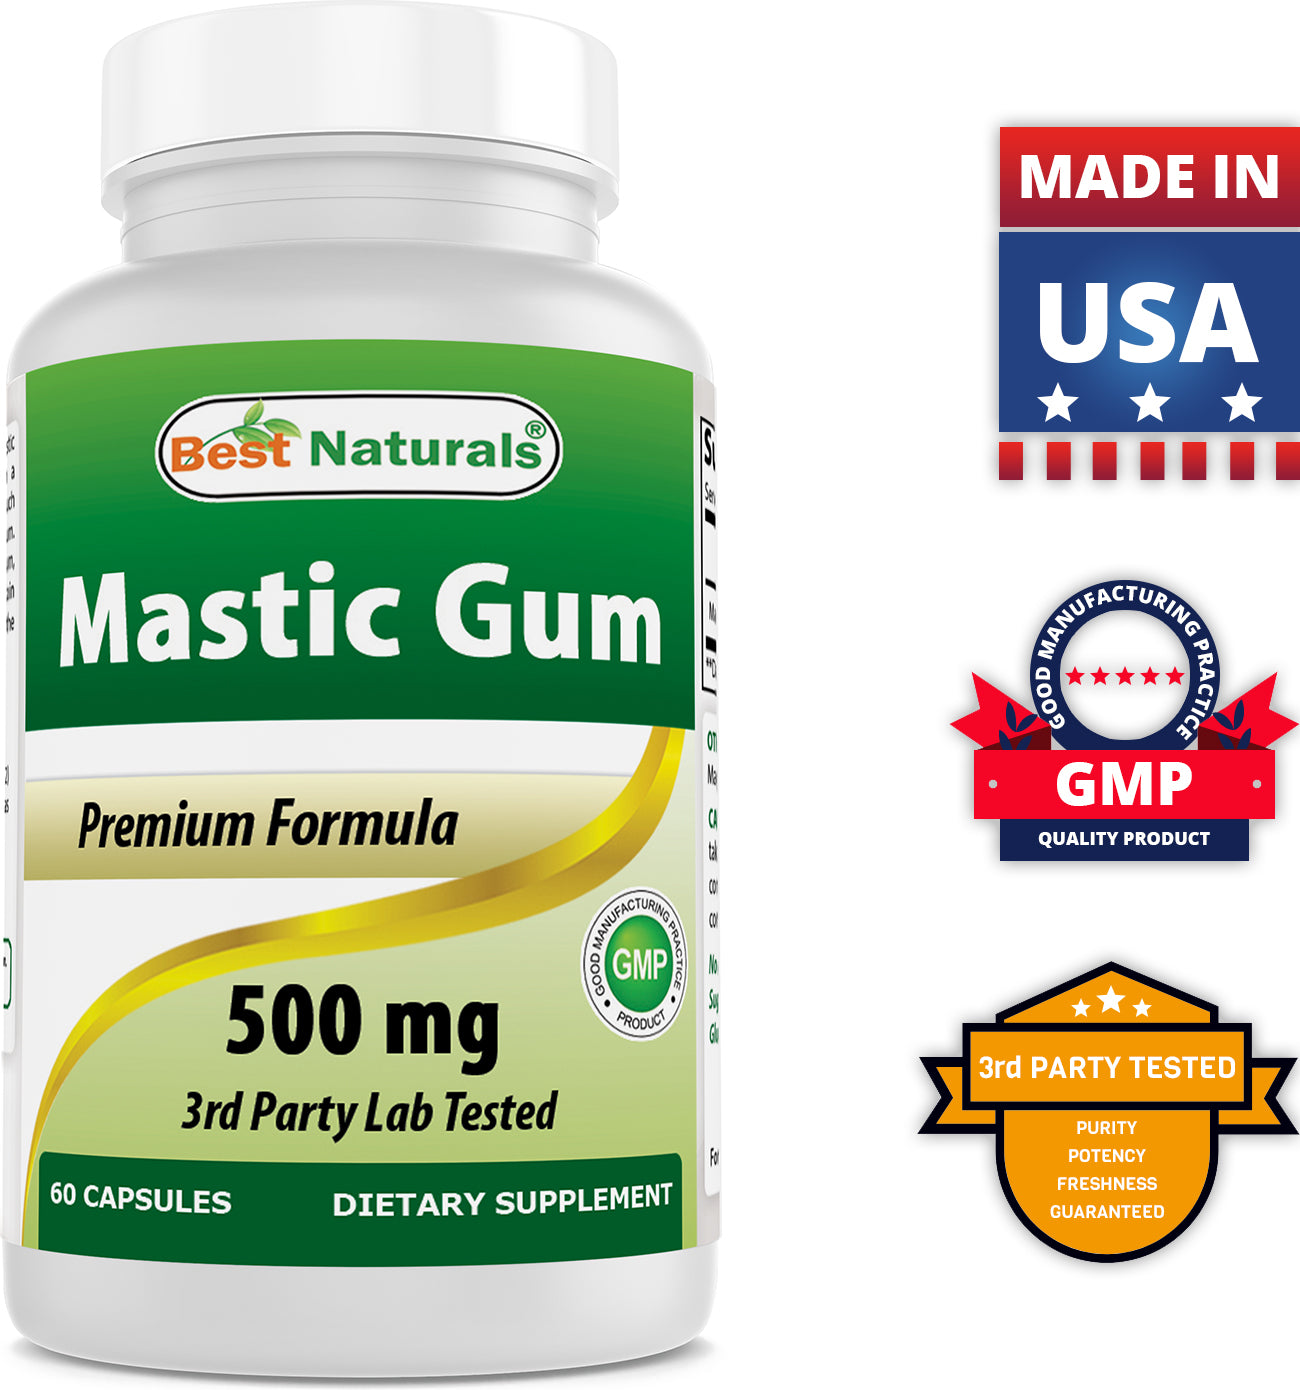 Best Naturals Mastic Gum 500 mg 60